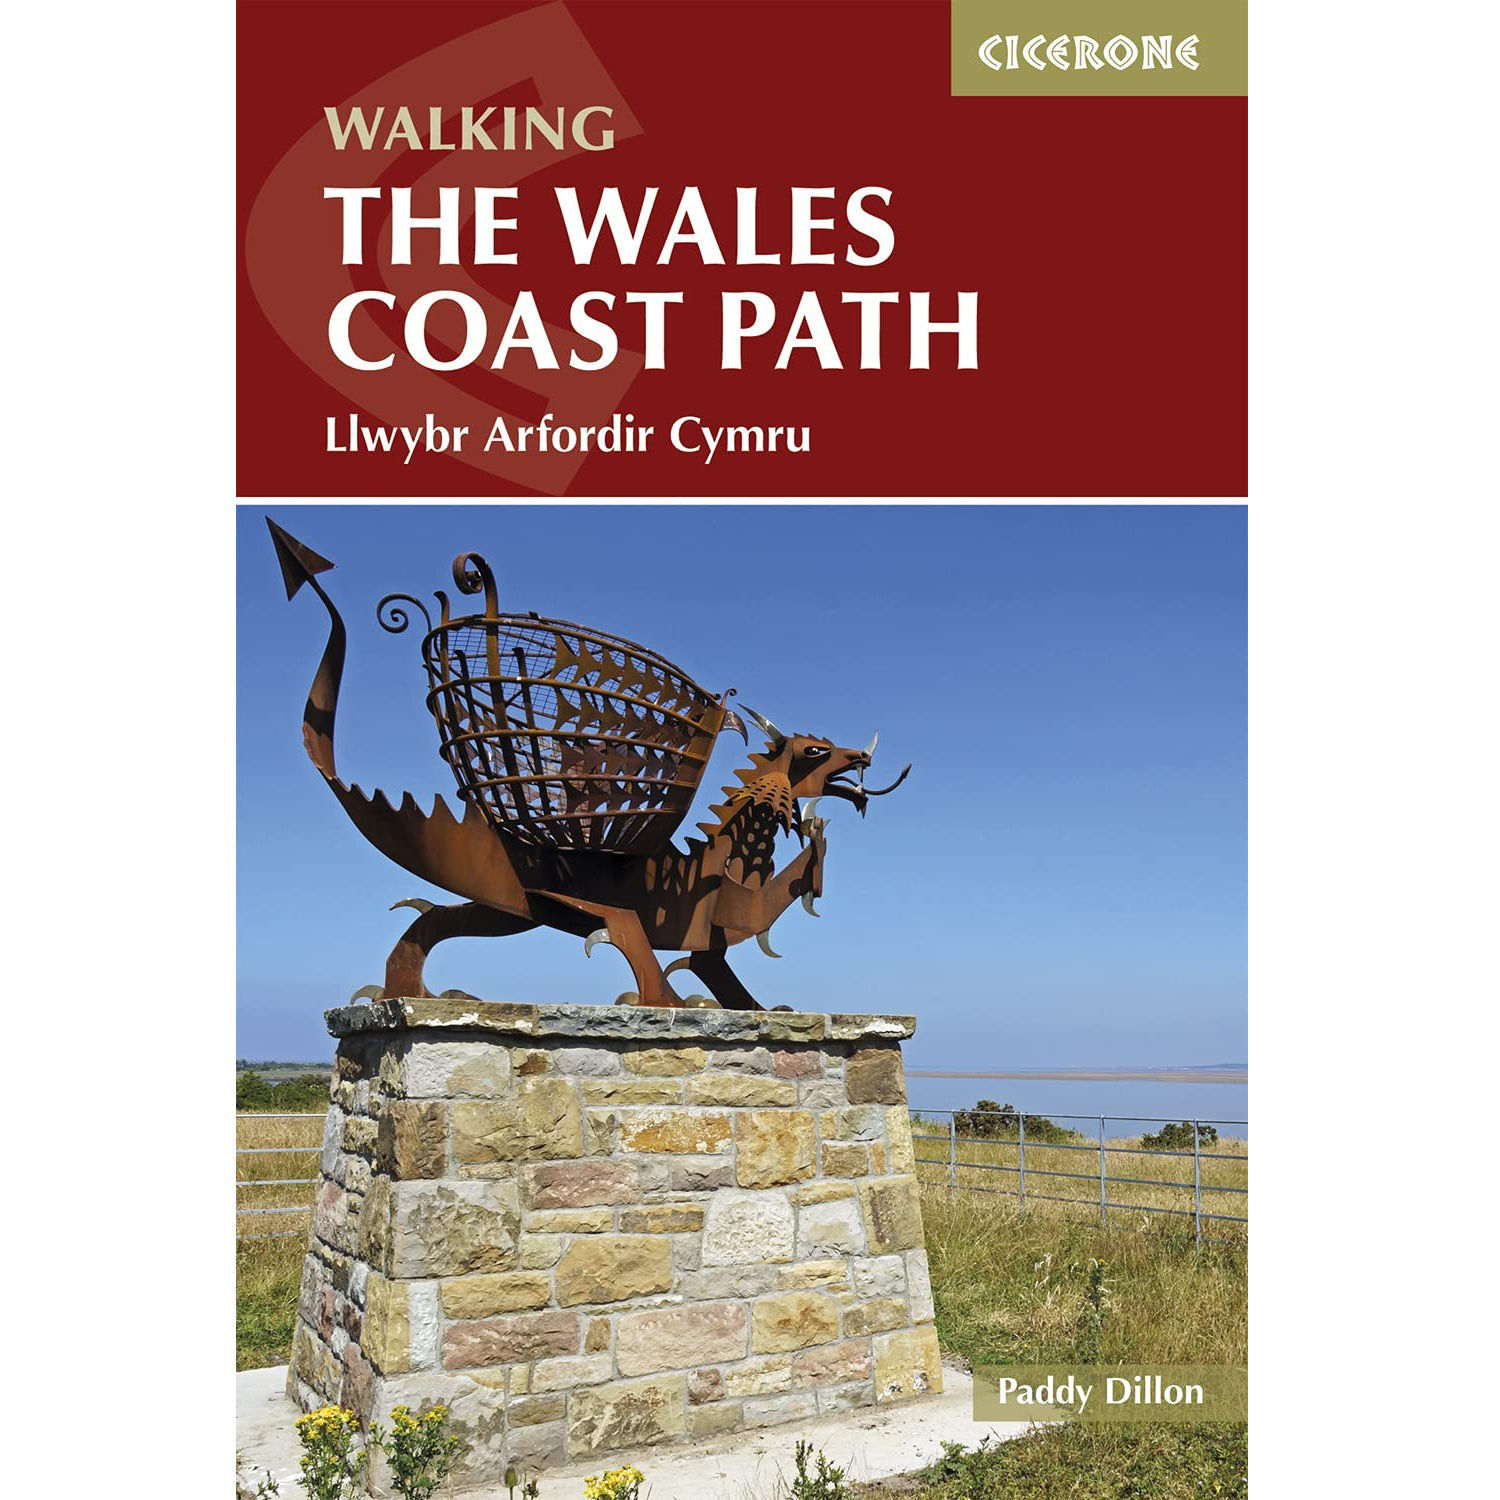 Cicerone Walking The Wales Coast Path - Llwybr Arfordir Cymru